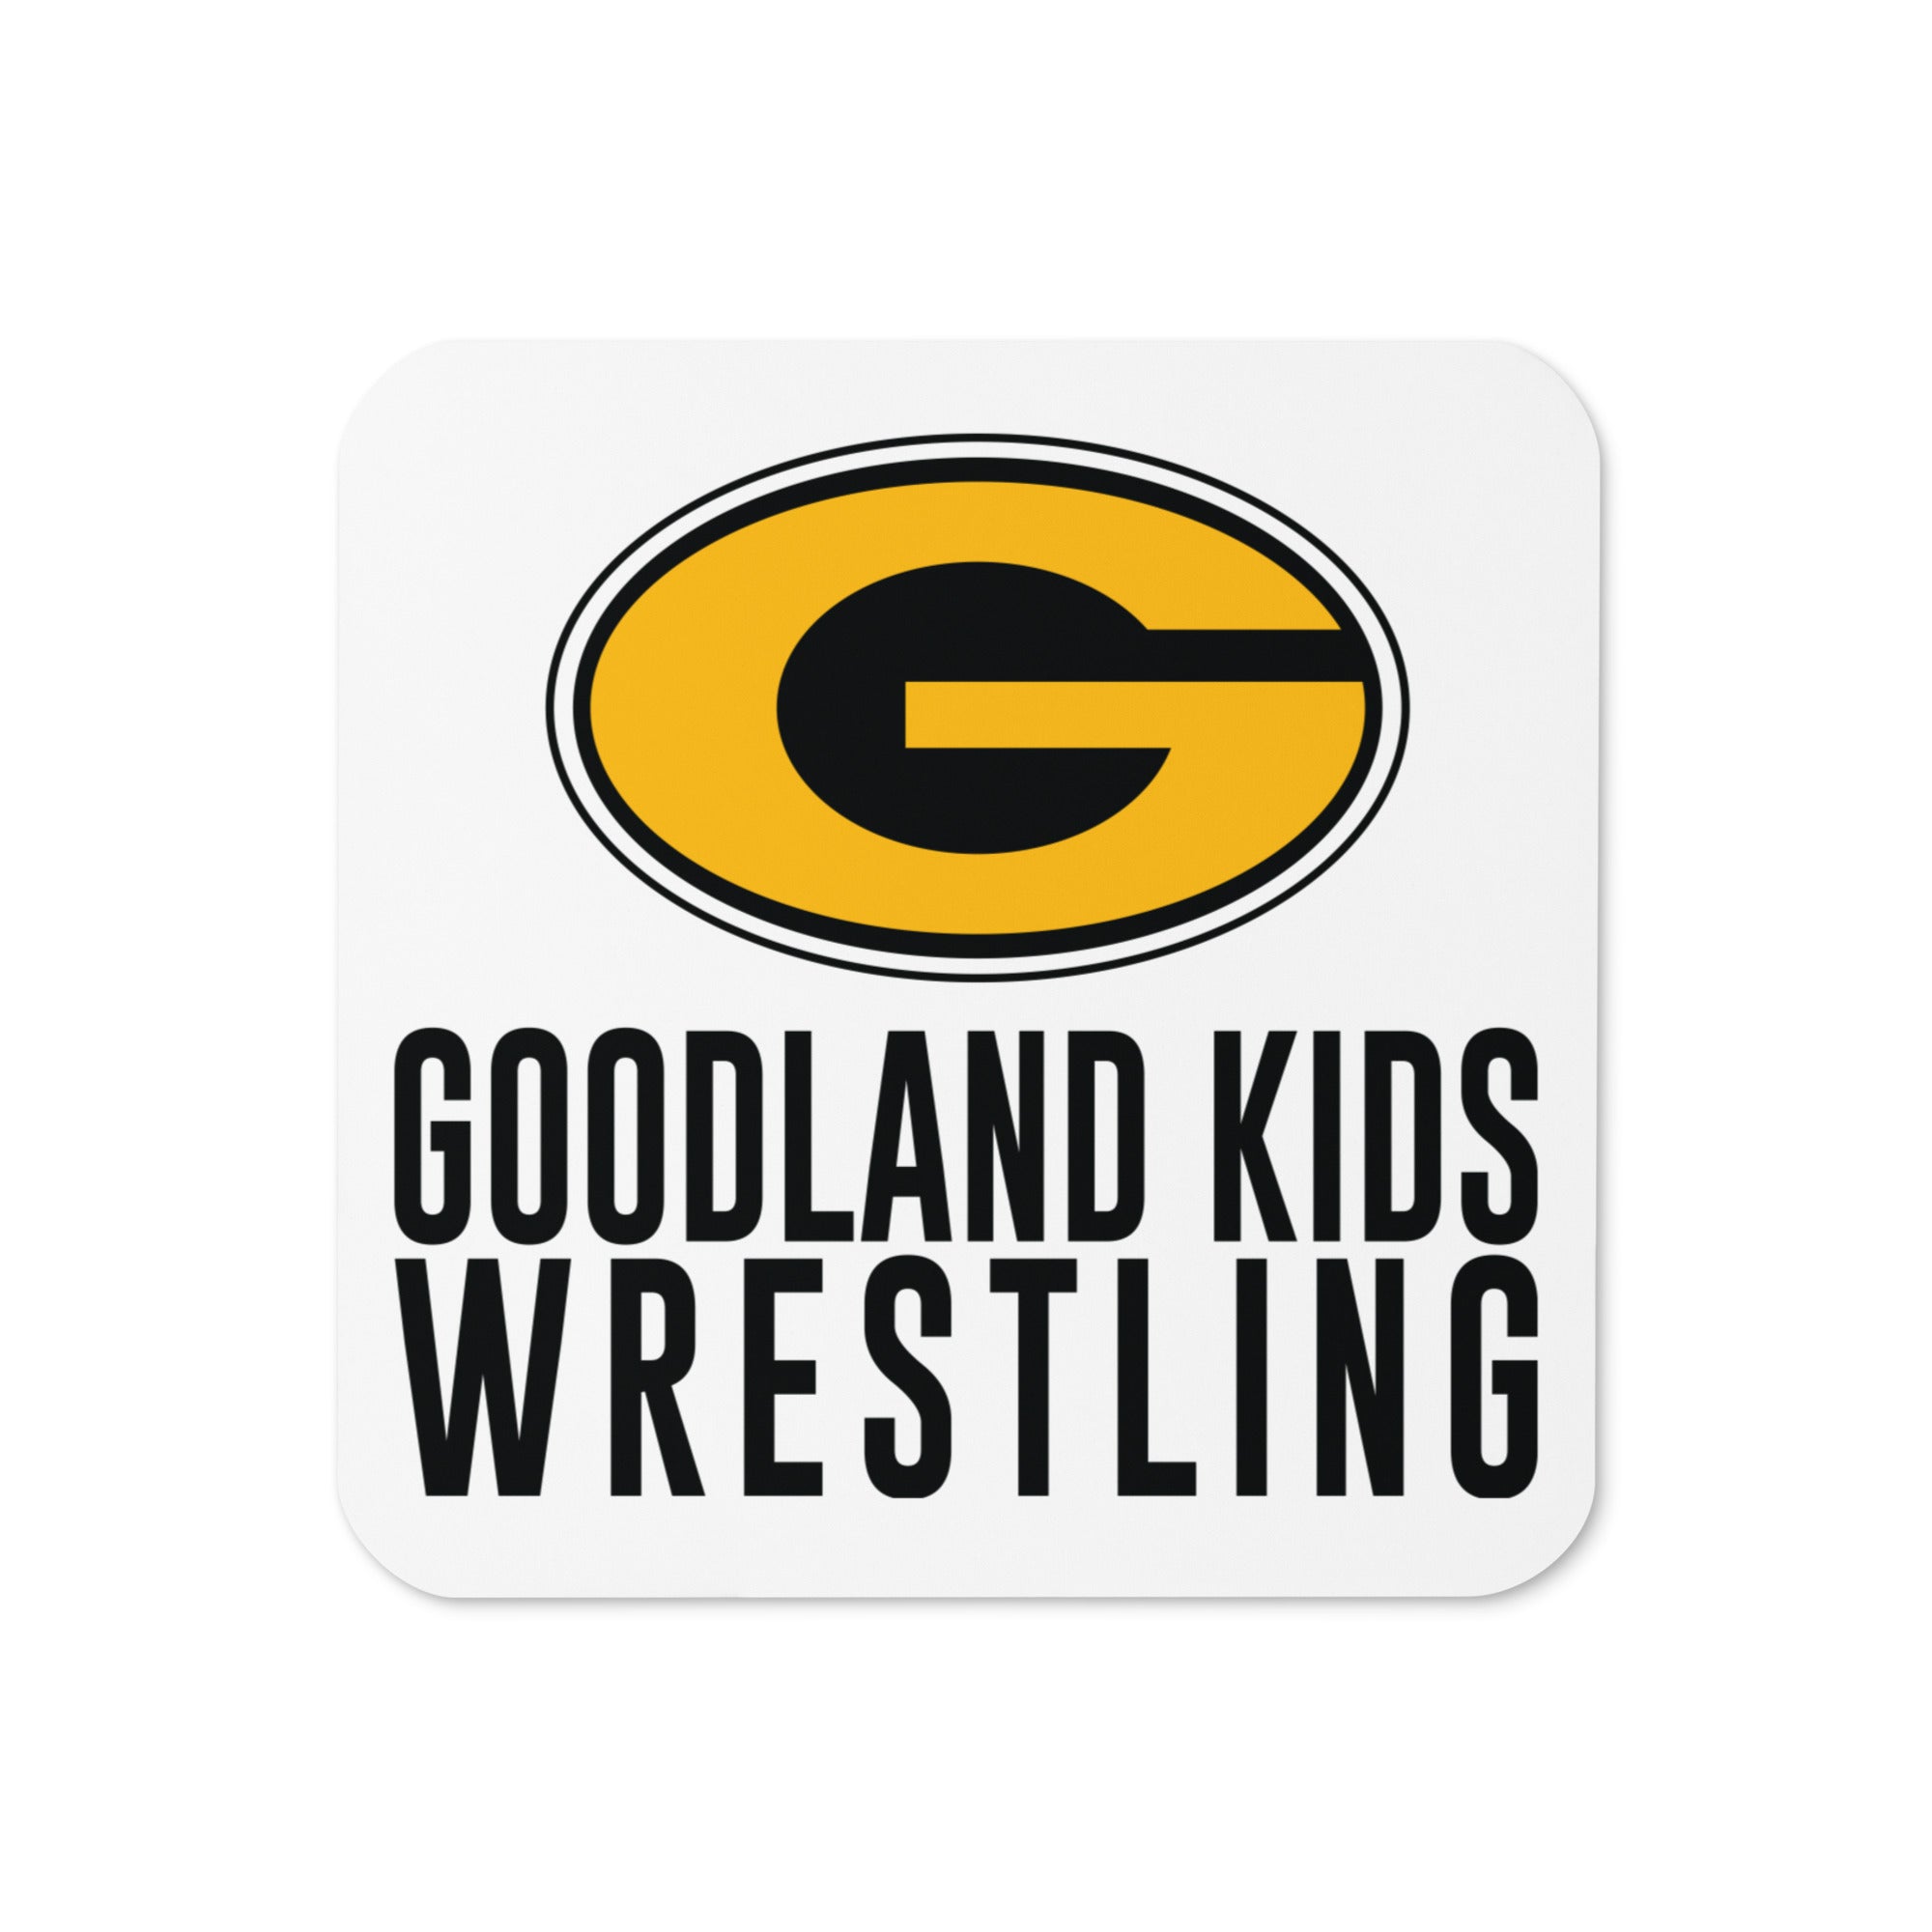 Goodland Kids Wrestling Cork Back Coaster